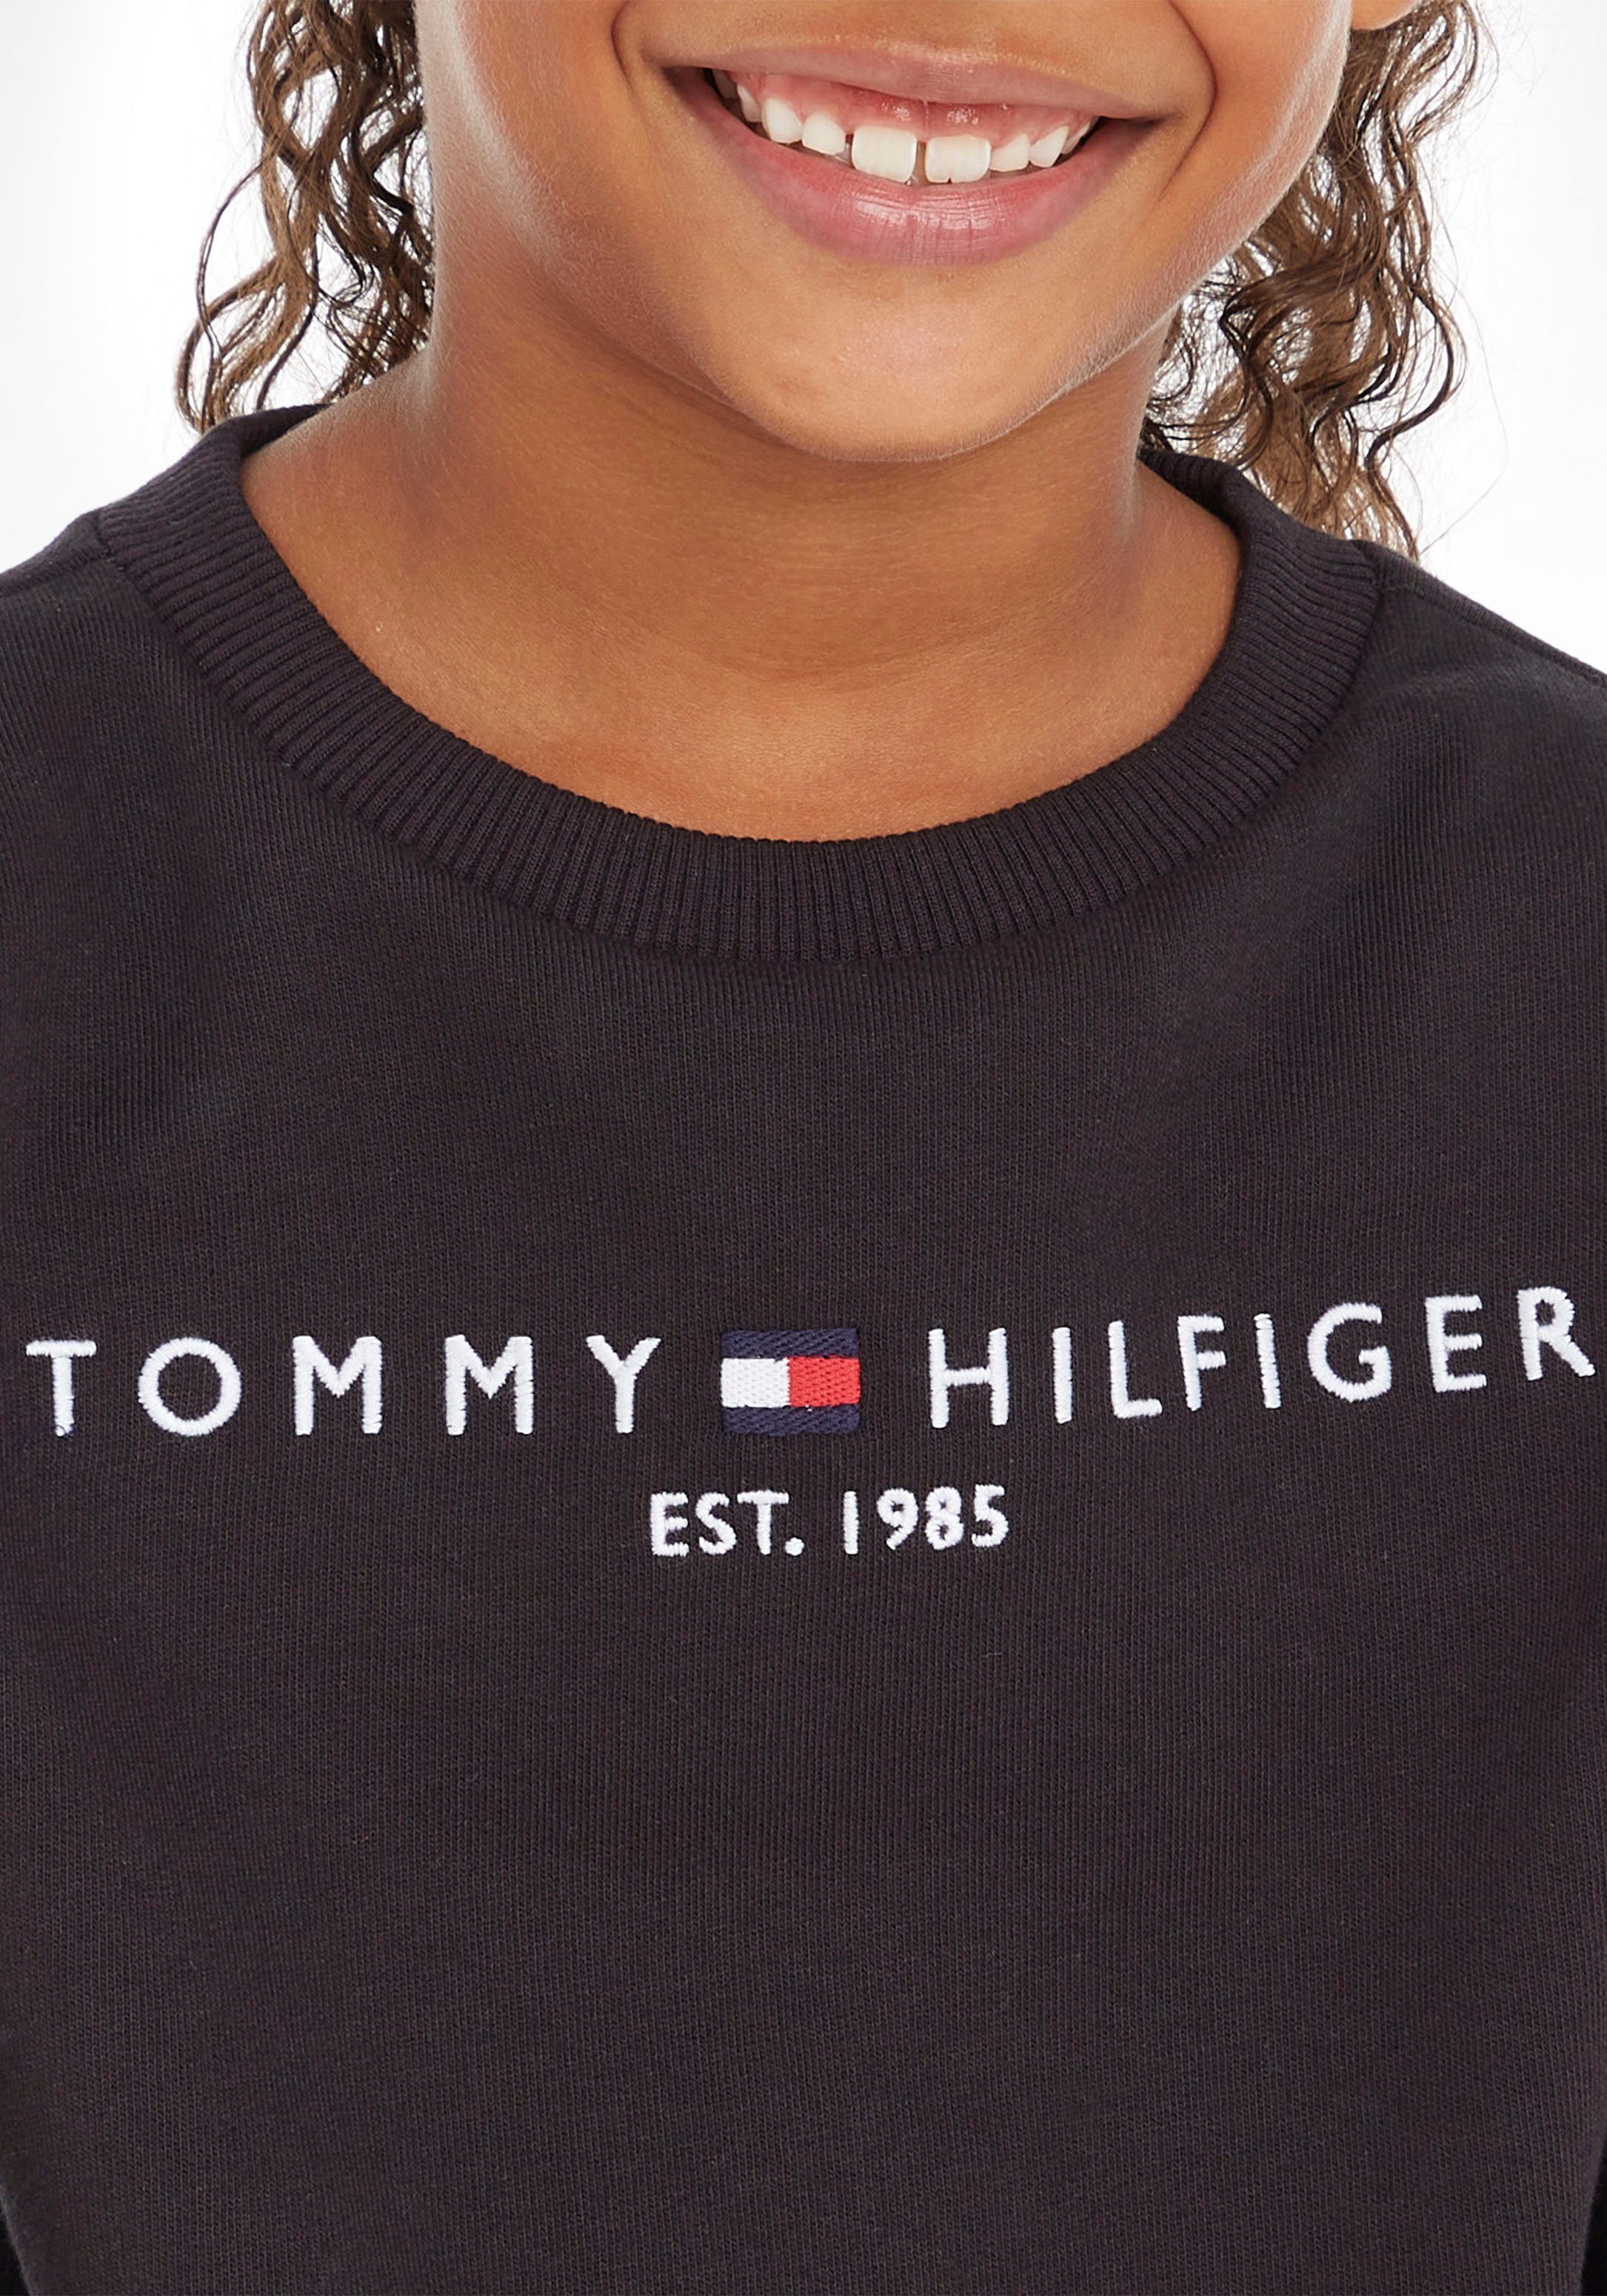 Tommy Hilfiger Kinder Kids Sweatshirt SWEATSHIRT MiniMe,für Mädchen und Junior Jungen ESSENTIAL